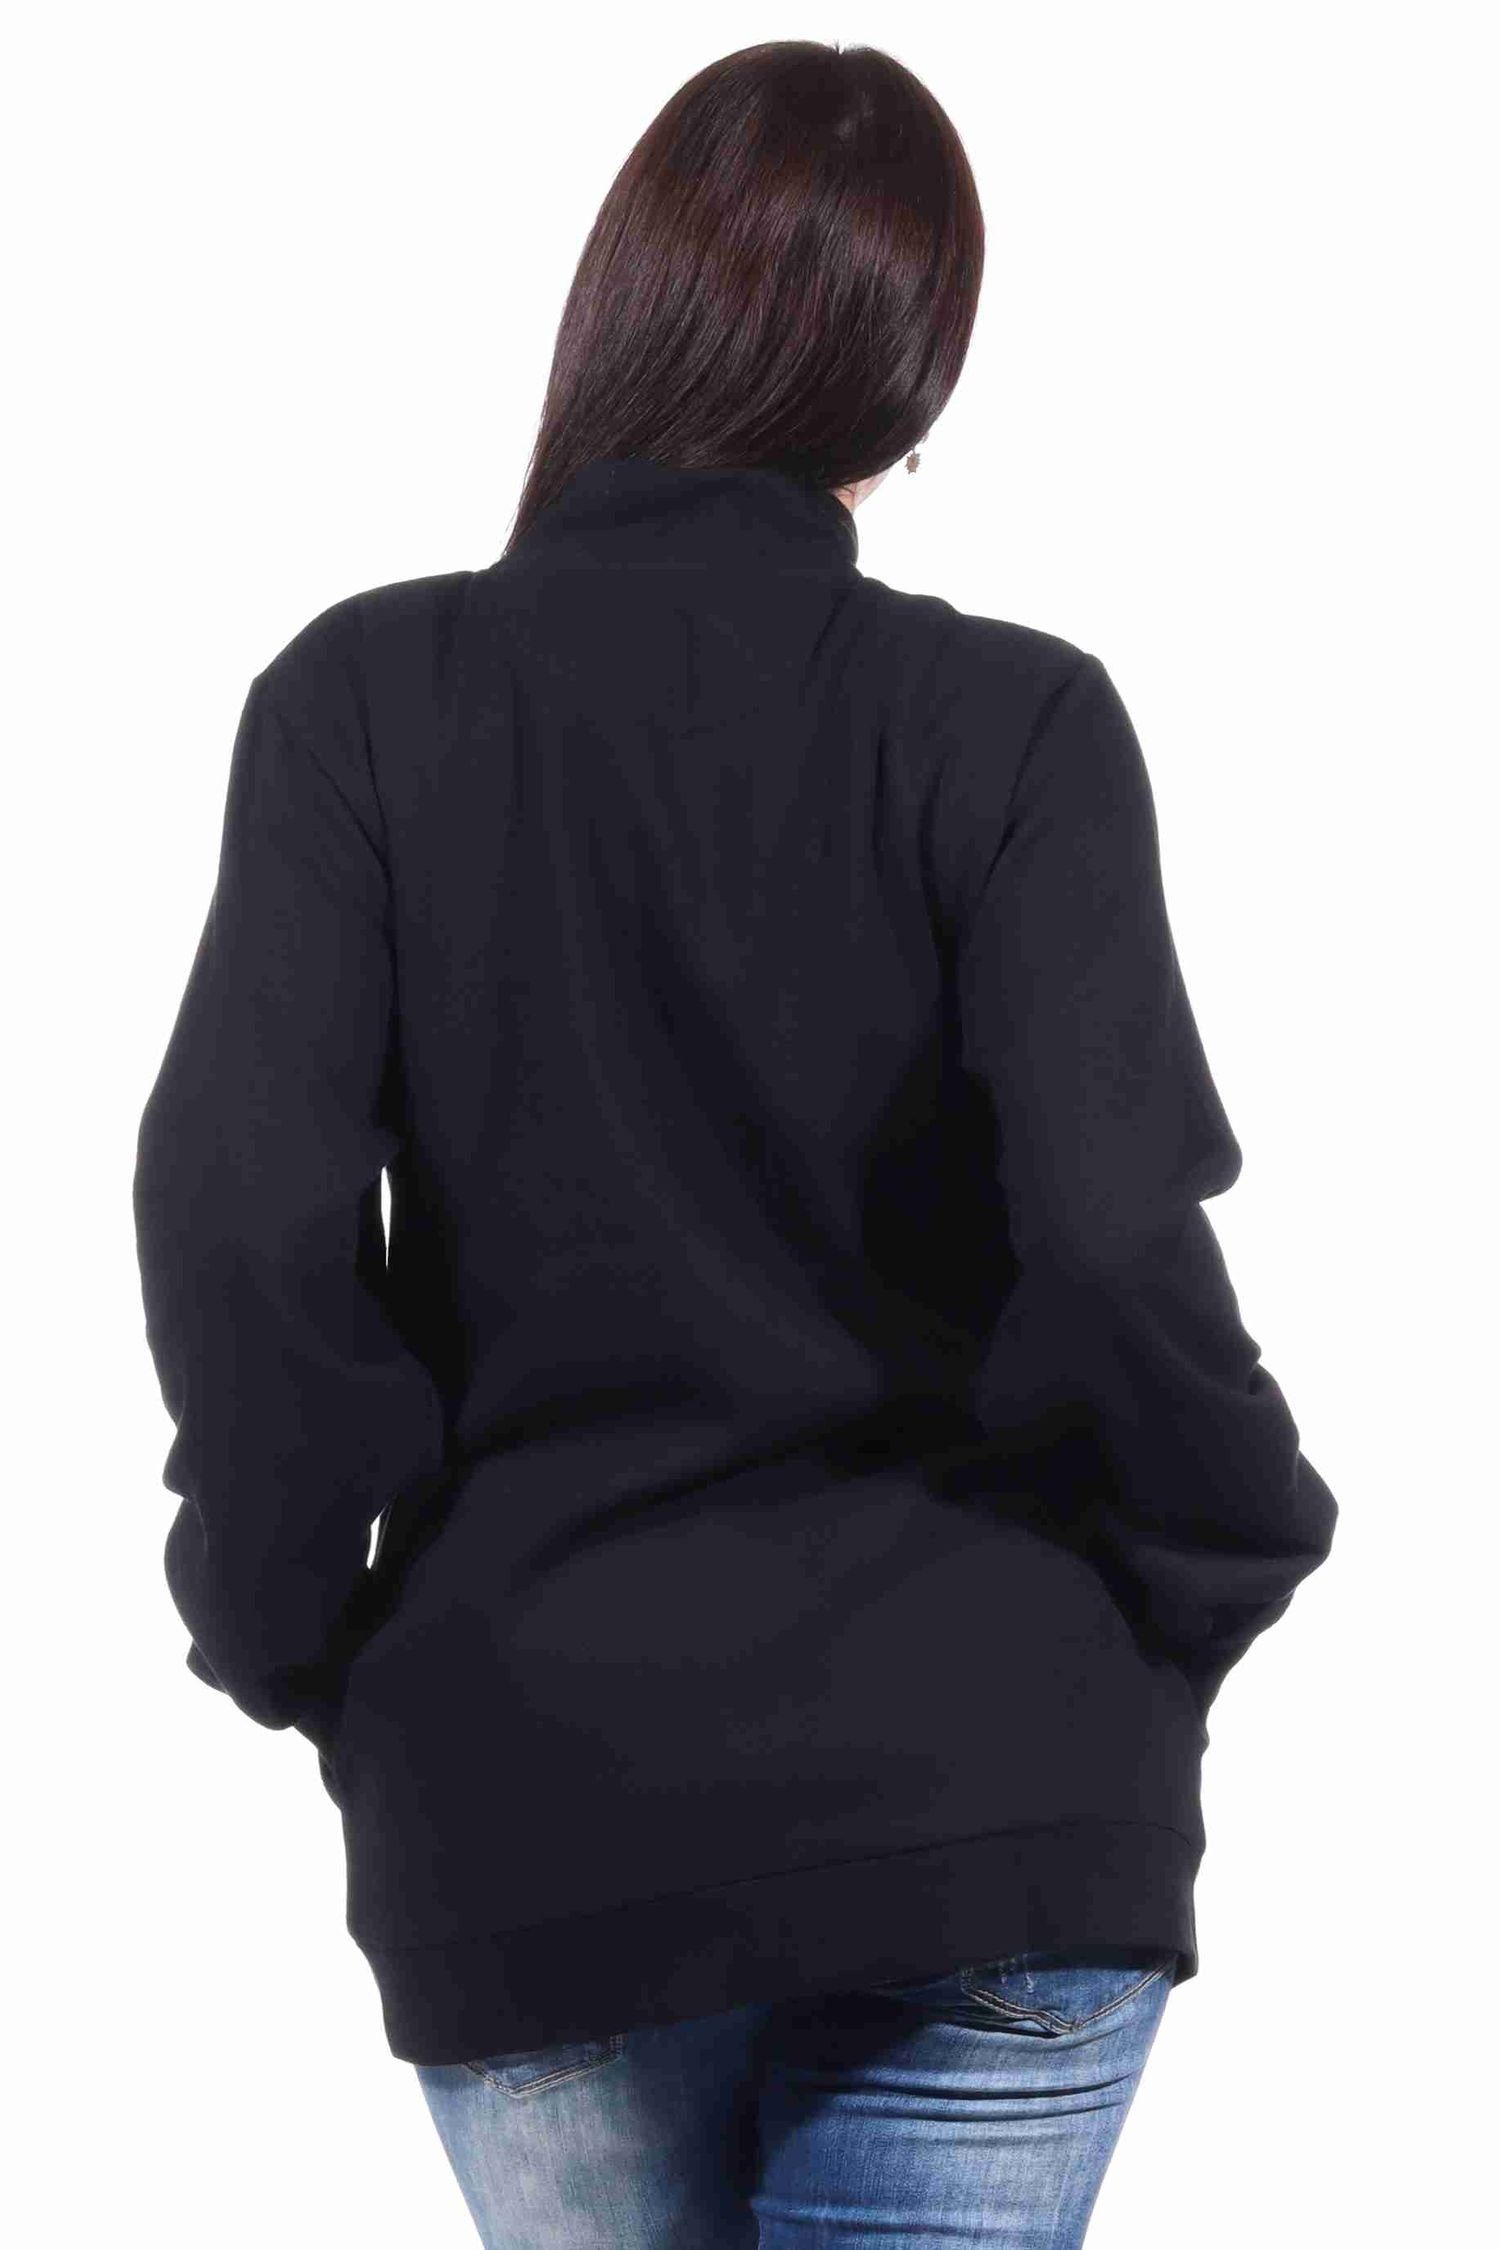 Normann Relaxanzug Damen Jacke für Hausanzug, oder Sportanzug Oberteil schwarz Jogginanzug